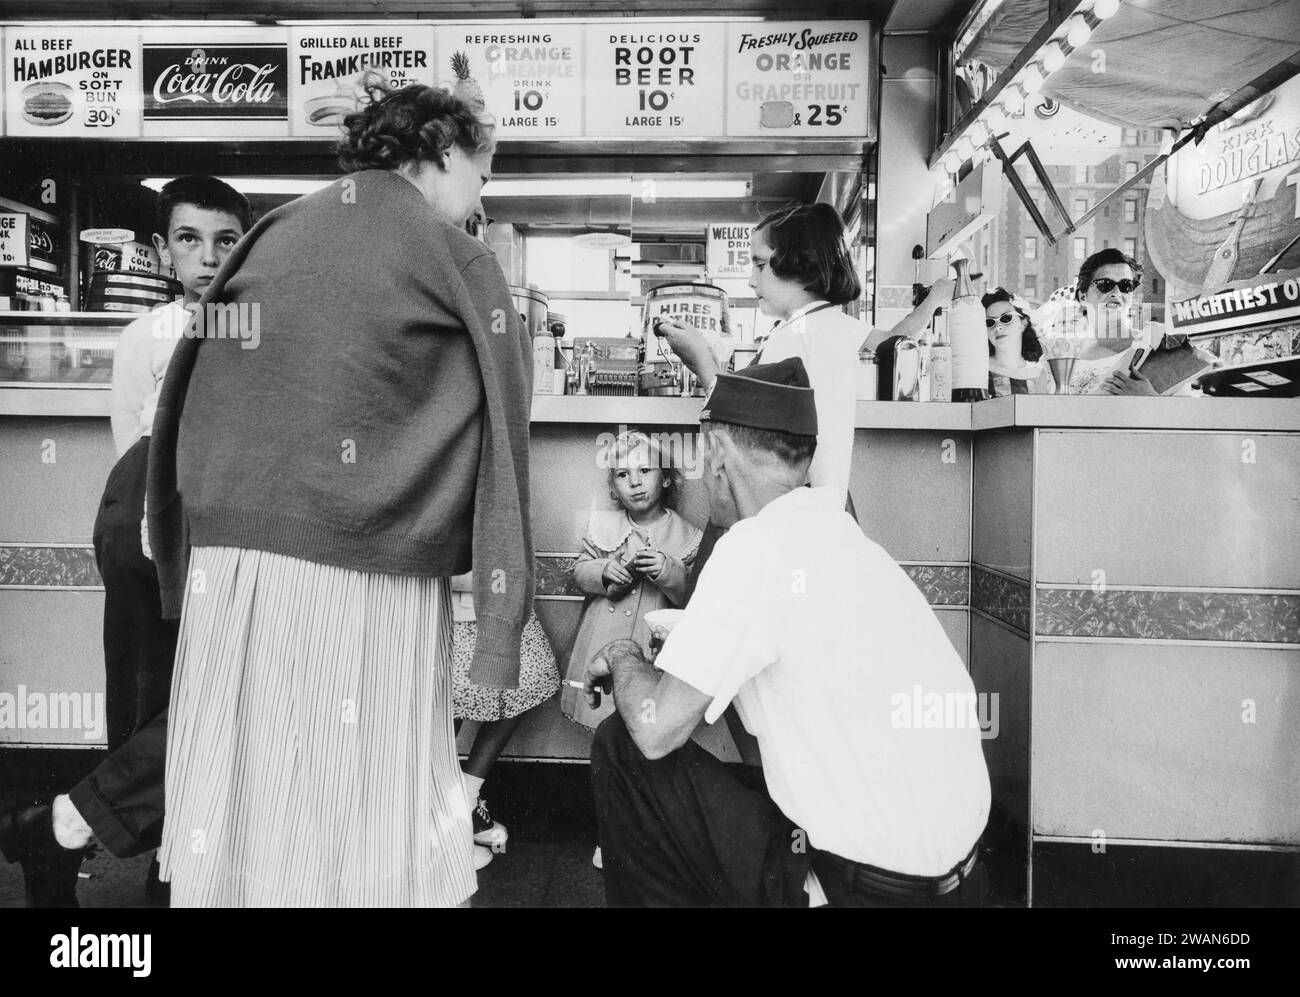 Groupe de personnes rassemblées autour du comptoir de restauration rapide, New York City, New York, USA, Angelo Rizzuto, Anthony Angel Collection, août 1958 Banque D'Images